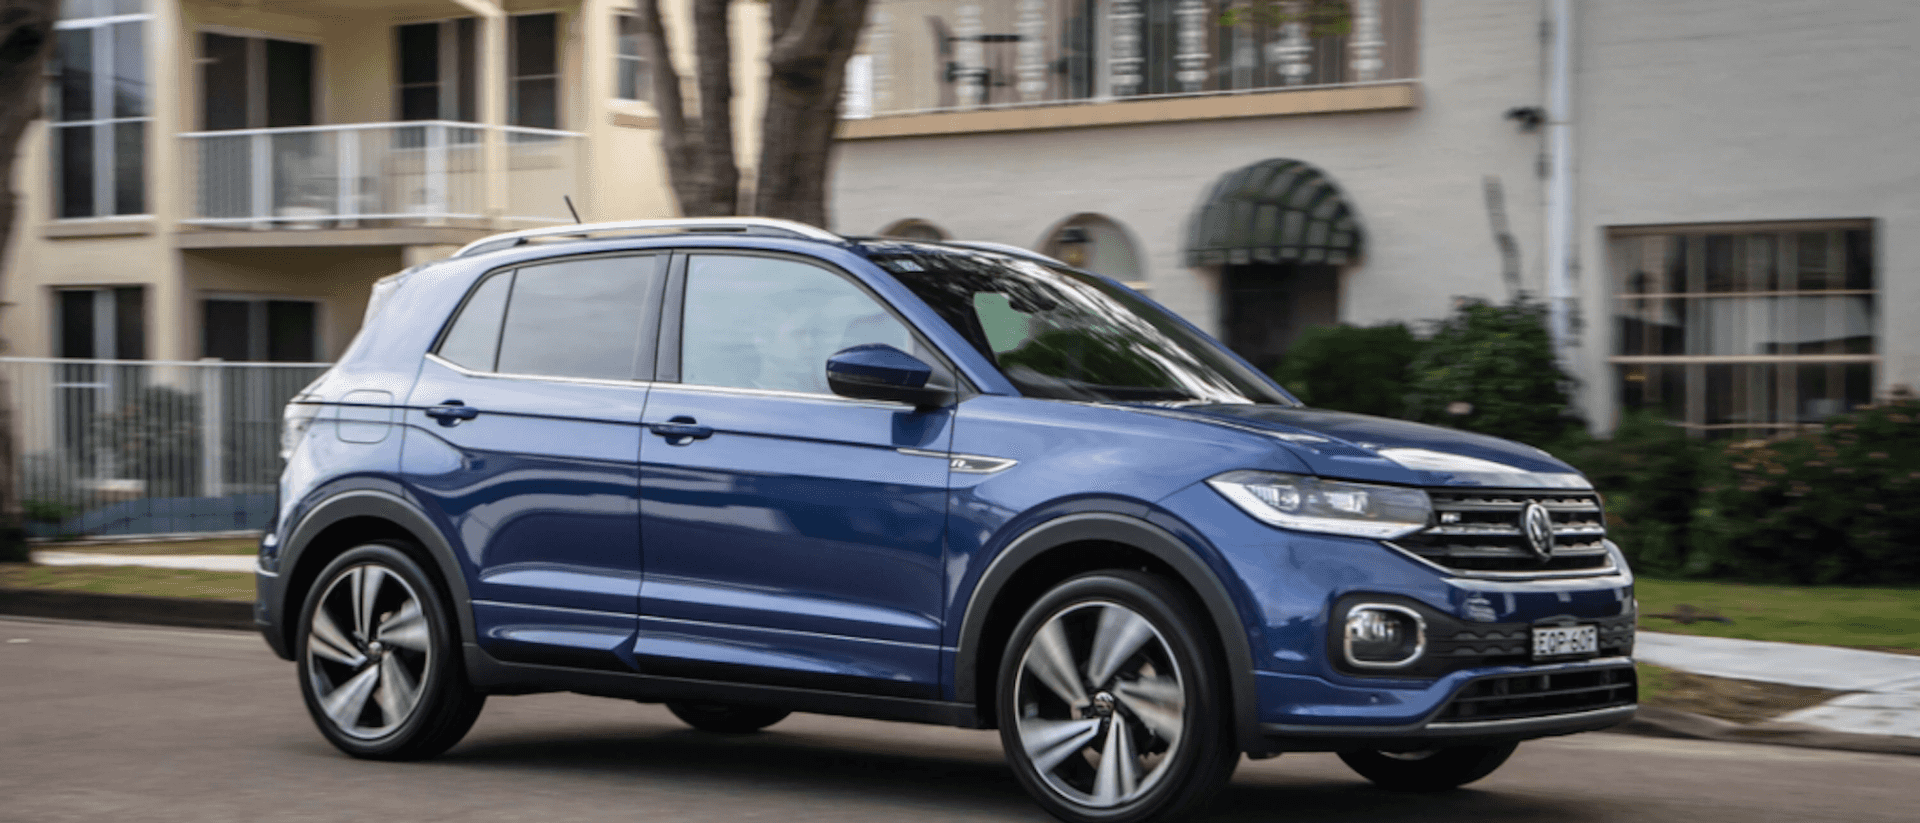 2021 Volkswagen T-Cross long-term review: Farewell - Drive